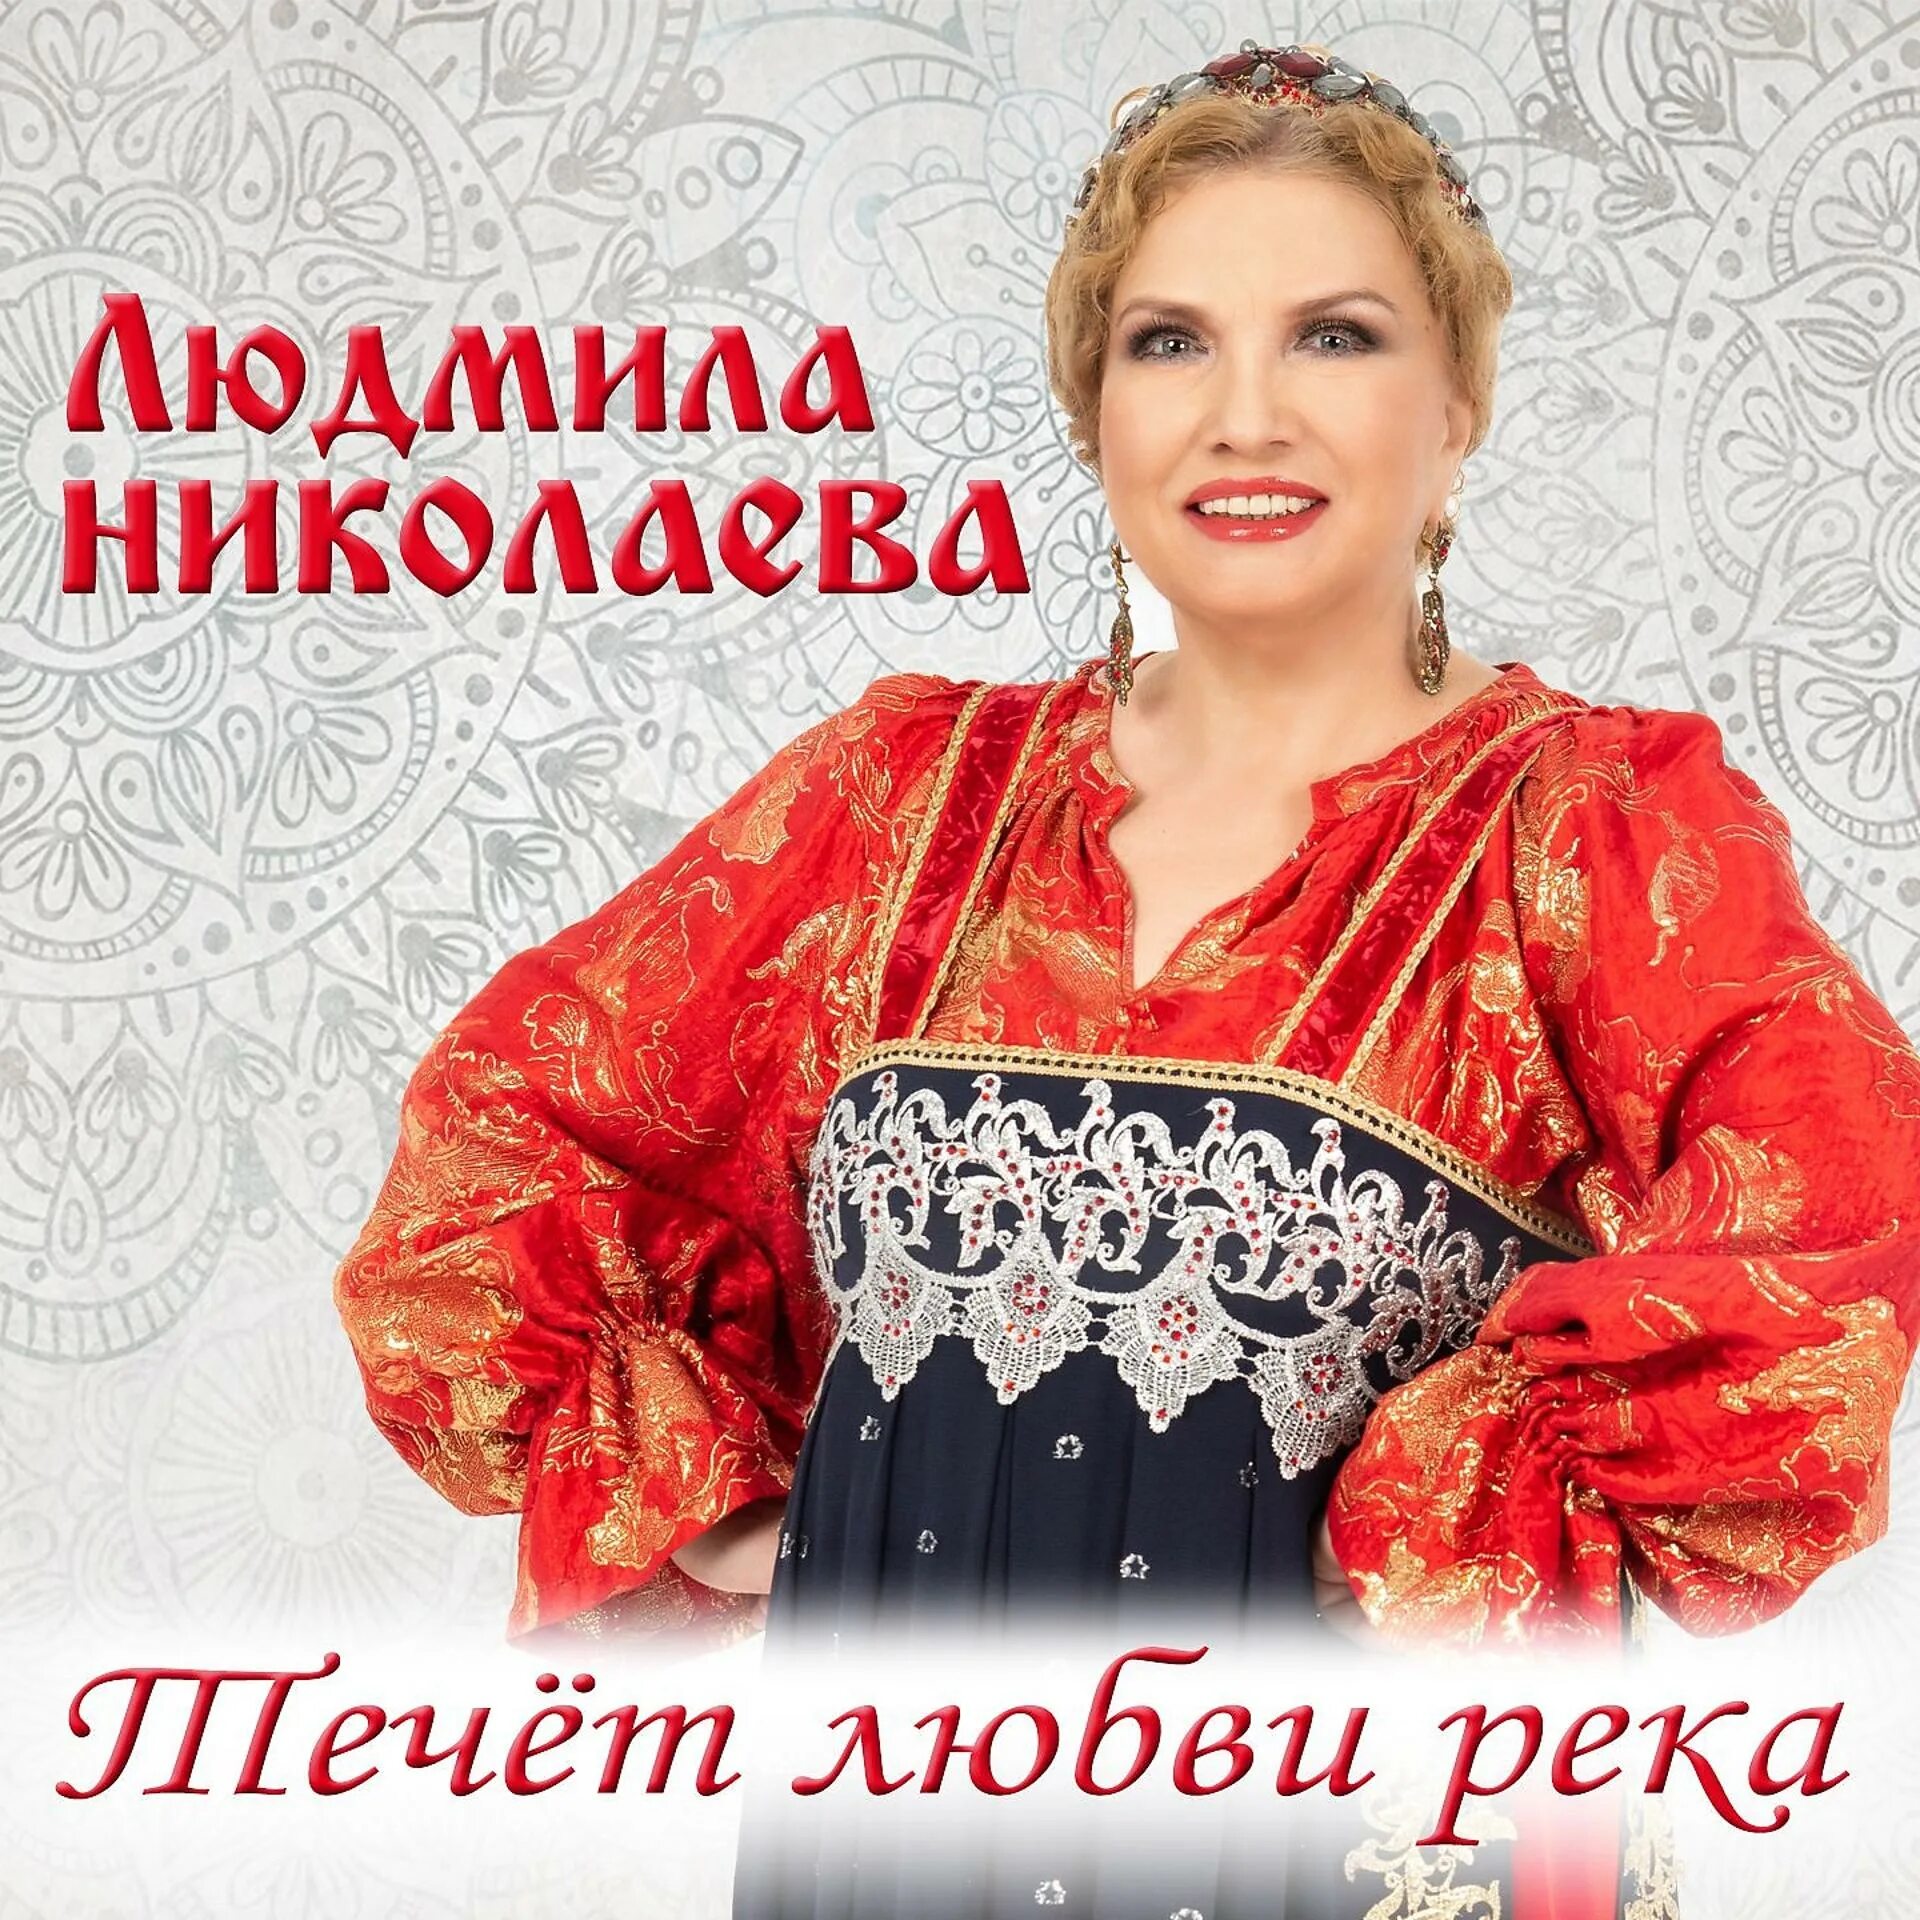 Альбом песен Людмилы Николаевой.